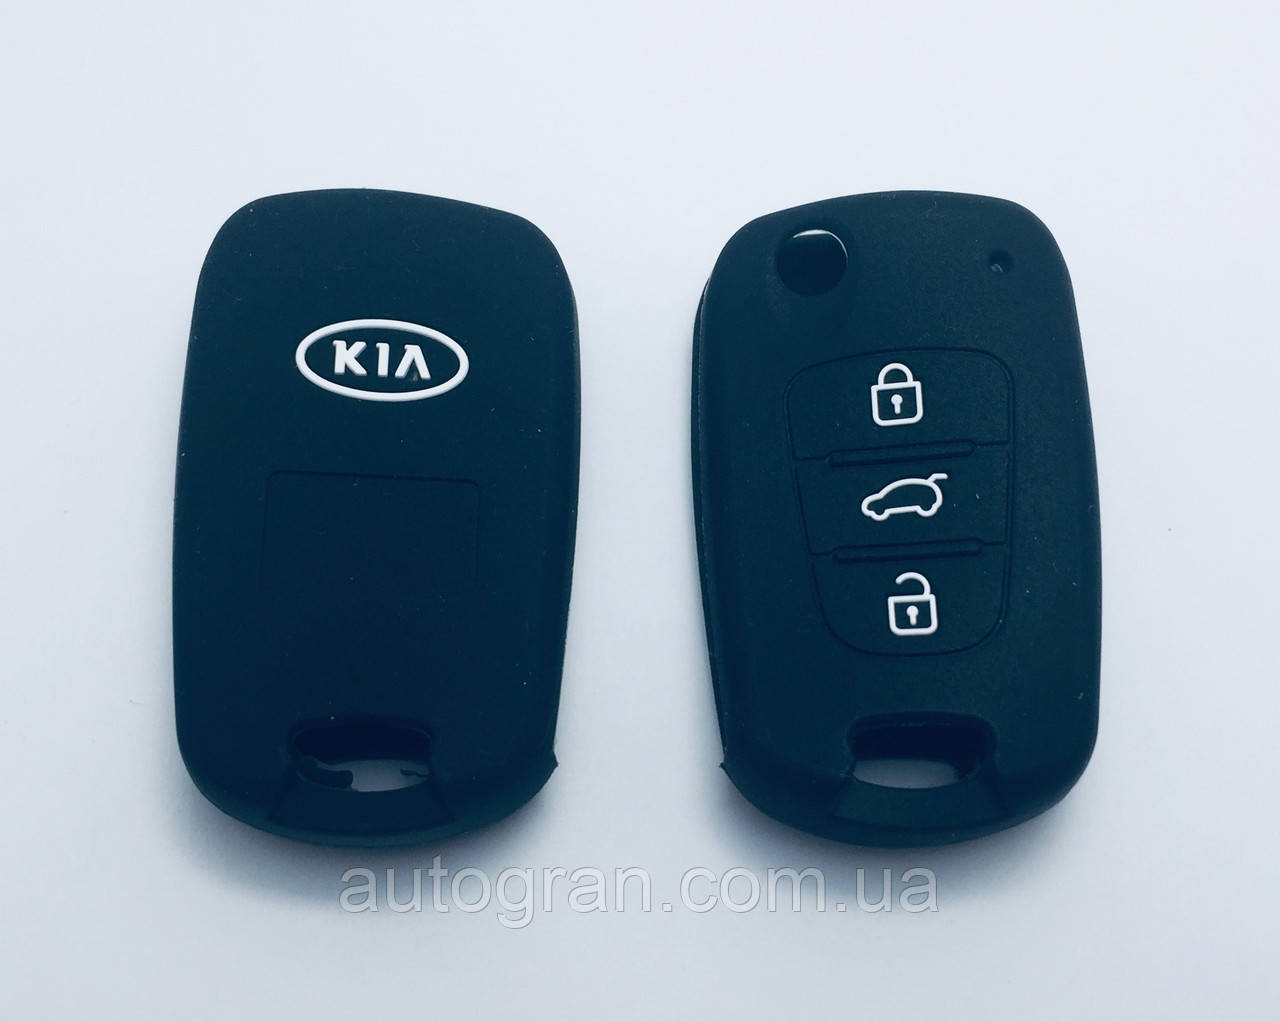 Силіконовий чохол на викидний ключ Kia Ceed Rio Sportage Picanto3 кнопки